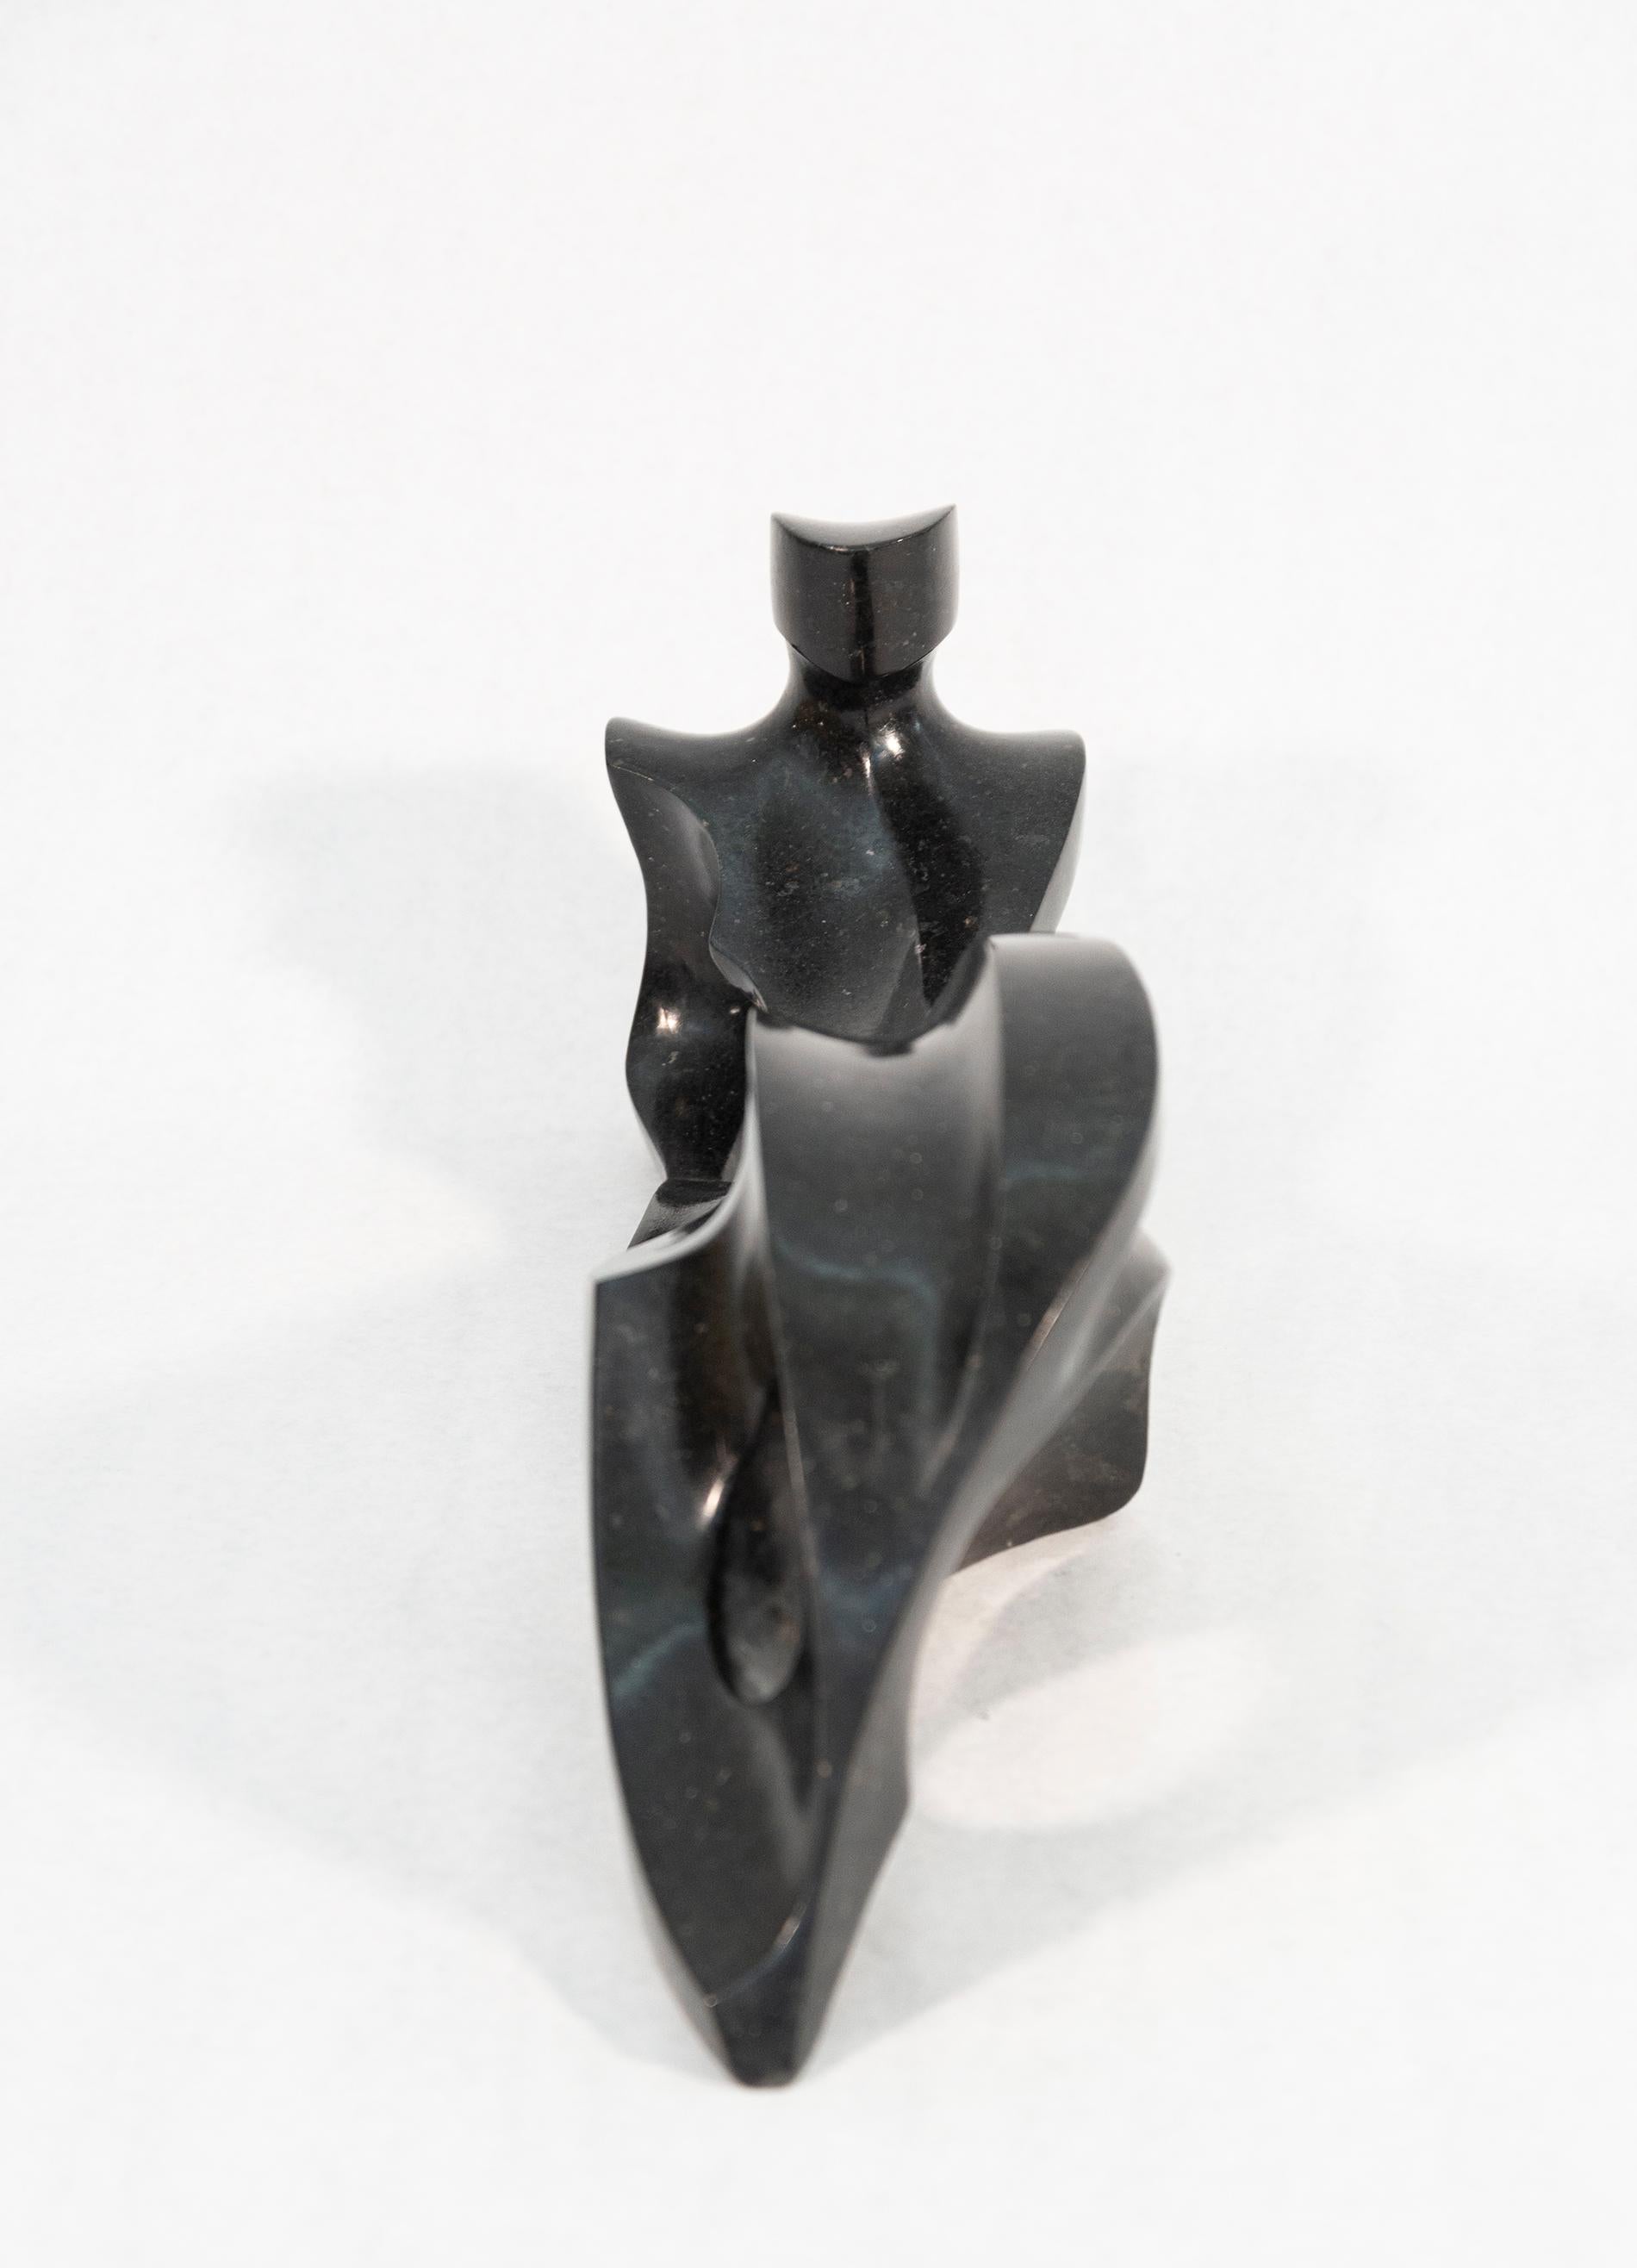 Elegant und zeitgemäß zugleich ist diese erhabene Skulptur einer liegenden Figur von Jeremy Guy. Das aus schwarzem Granit gemeißelte und zu einer glatten, samtartigen Oberfläche geschliffene Motiv ist klassisch. Guys Einflüsse - die bemerkenswerten